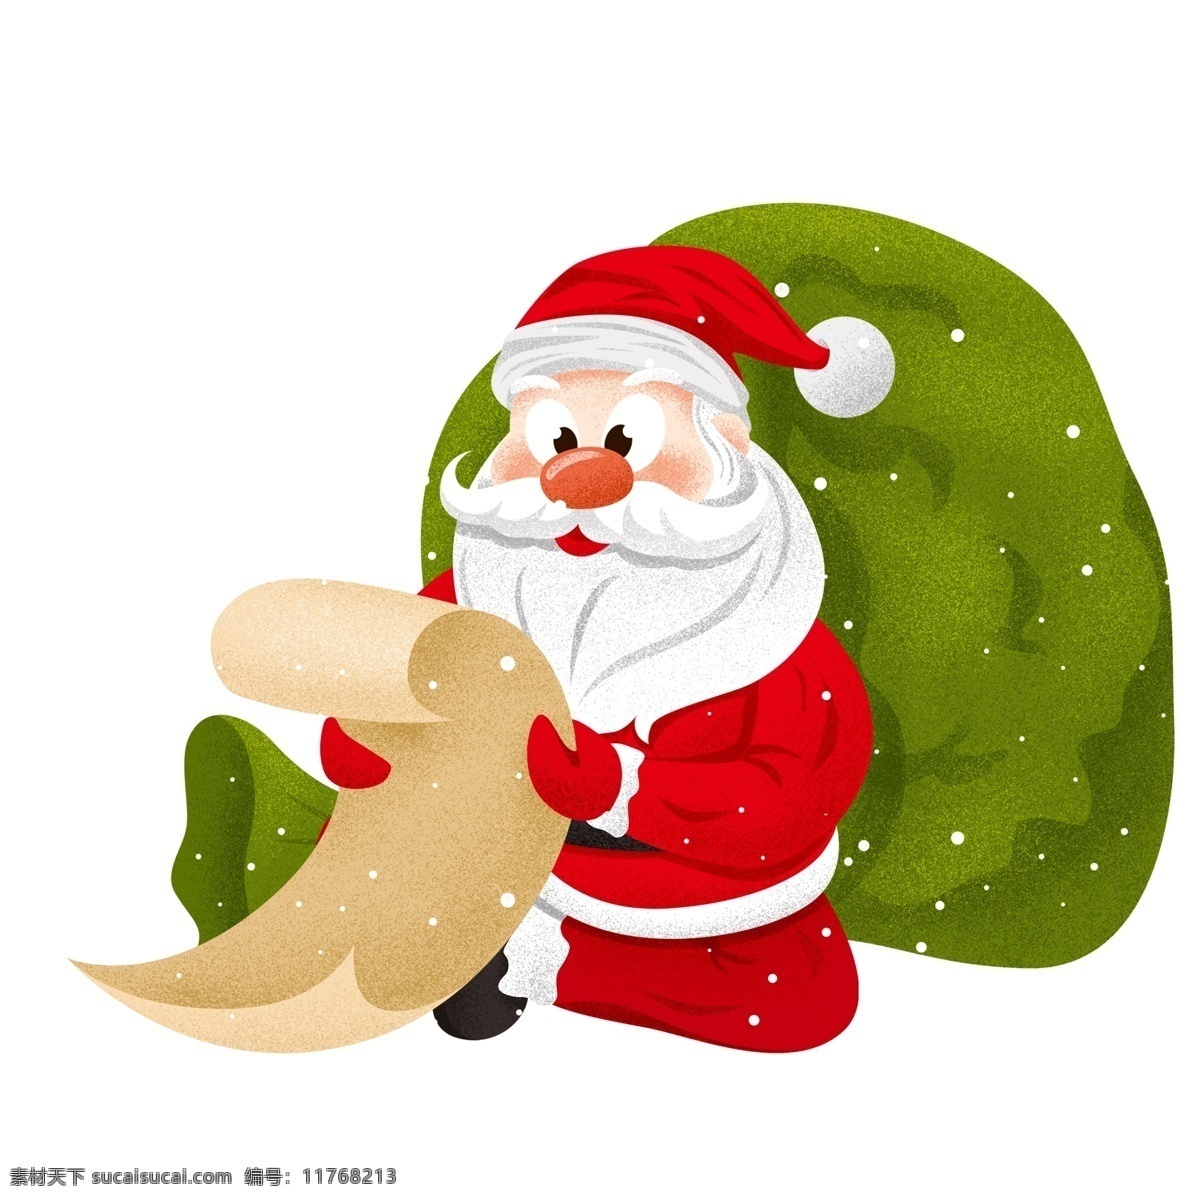 大雪 中看 礼物 清单 圣诞老人 肌理 写实 插画 冬季 圣诞节 礼物清单 节日元素